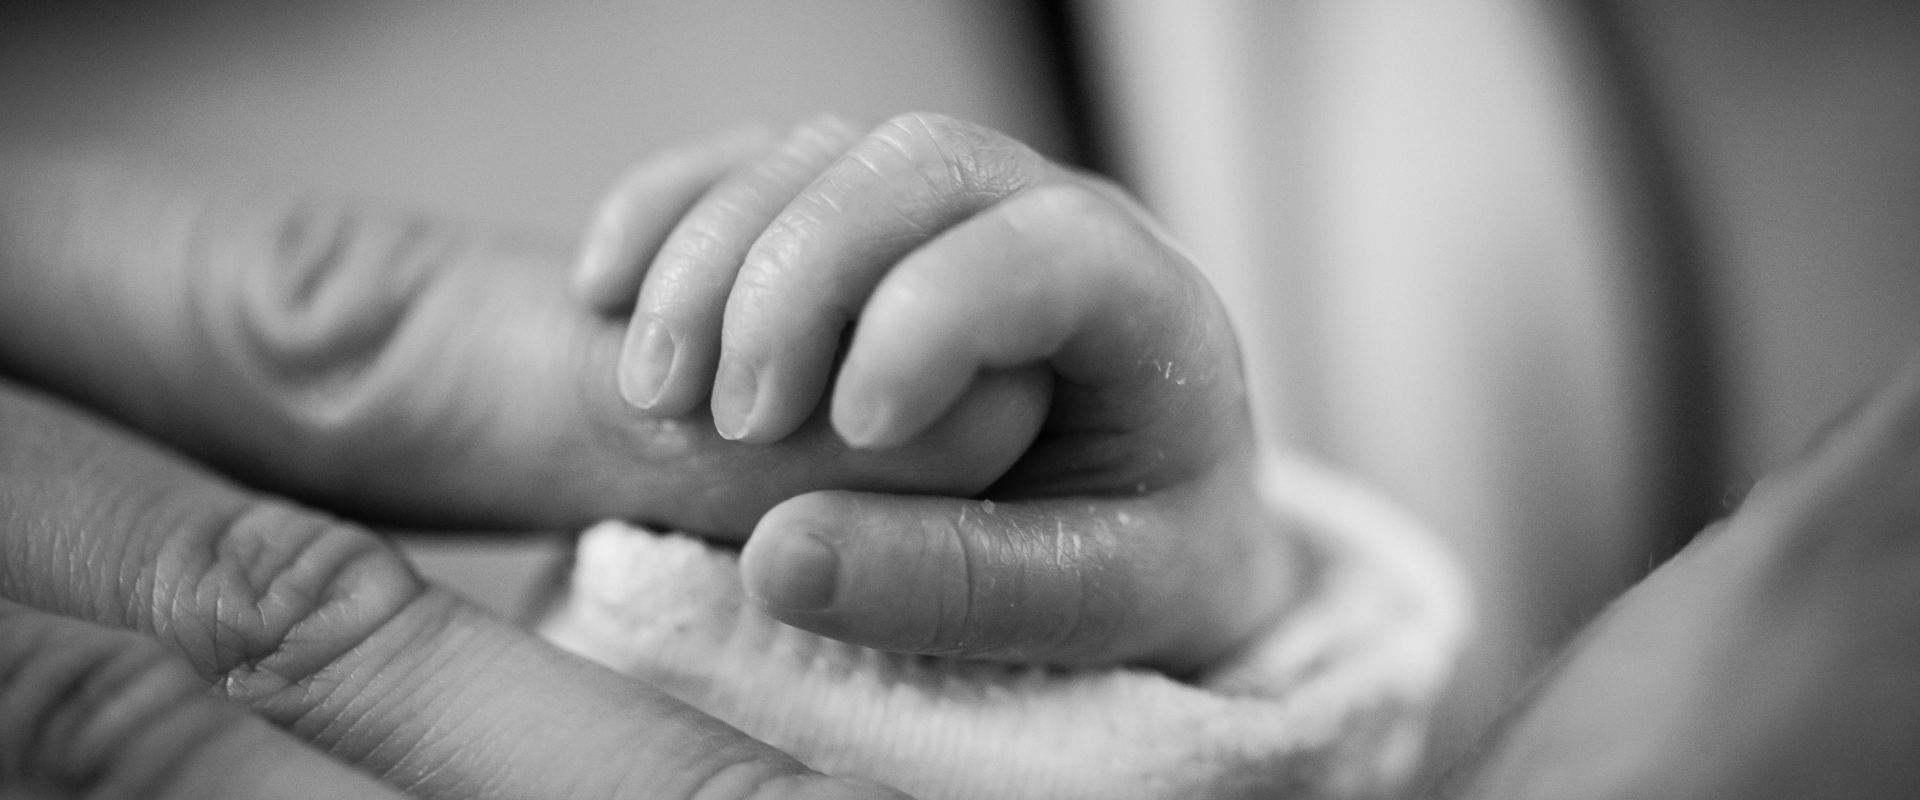 Geburtsschaden durch Sauerstoffmangel: Ursachen, Spätfolgen und rechtliche Aspekte Thumbnail